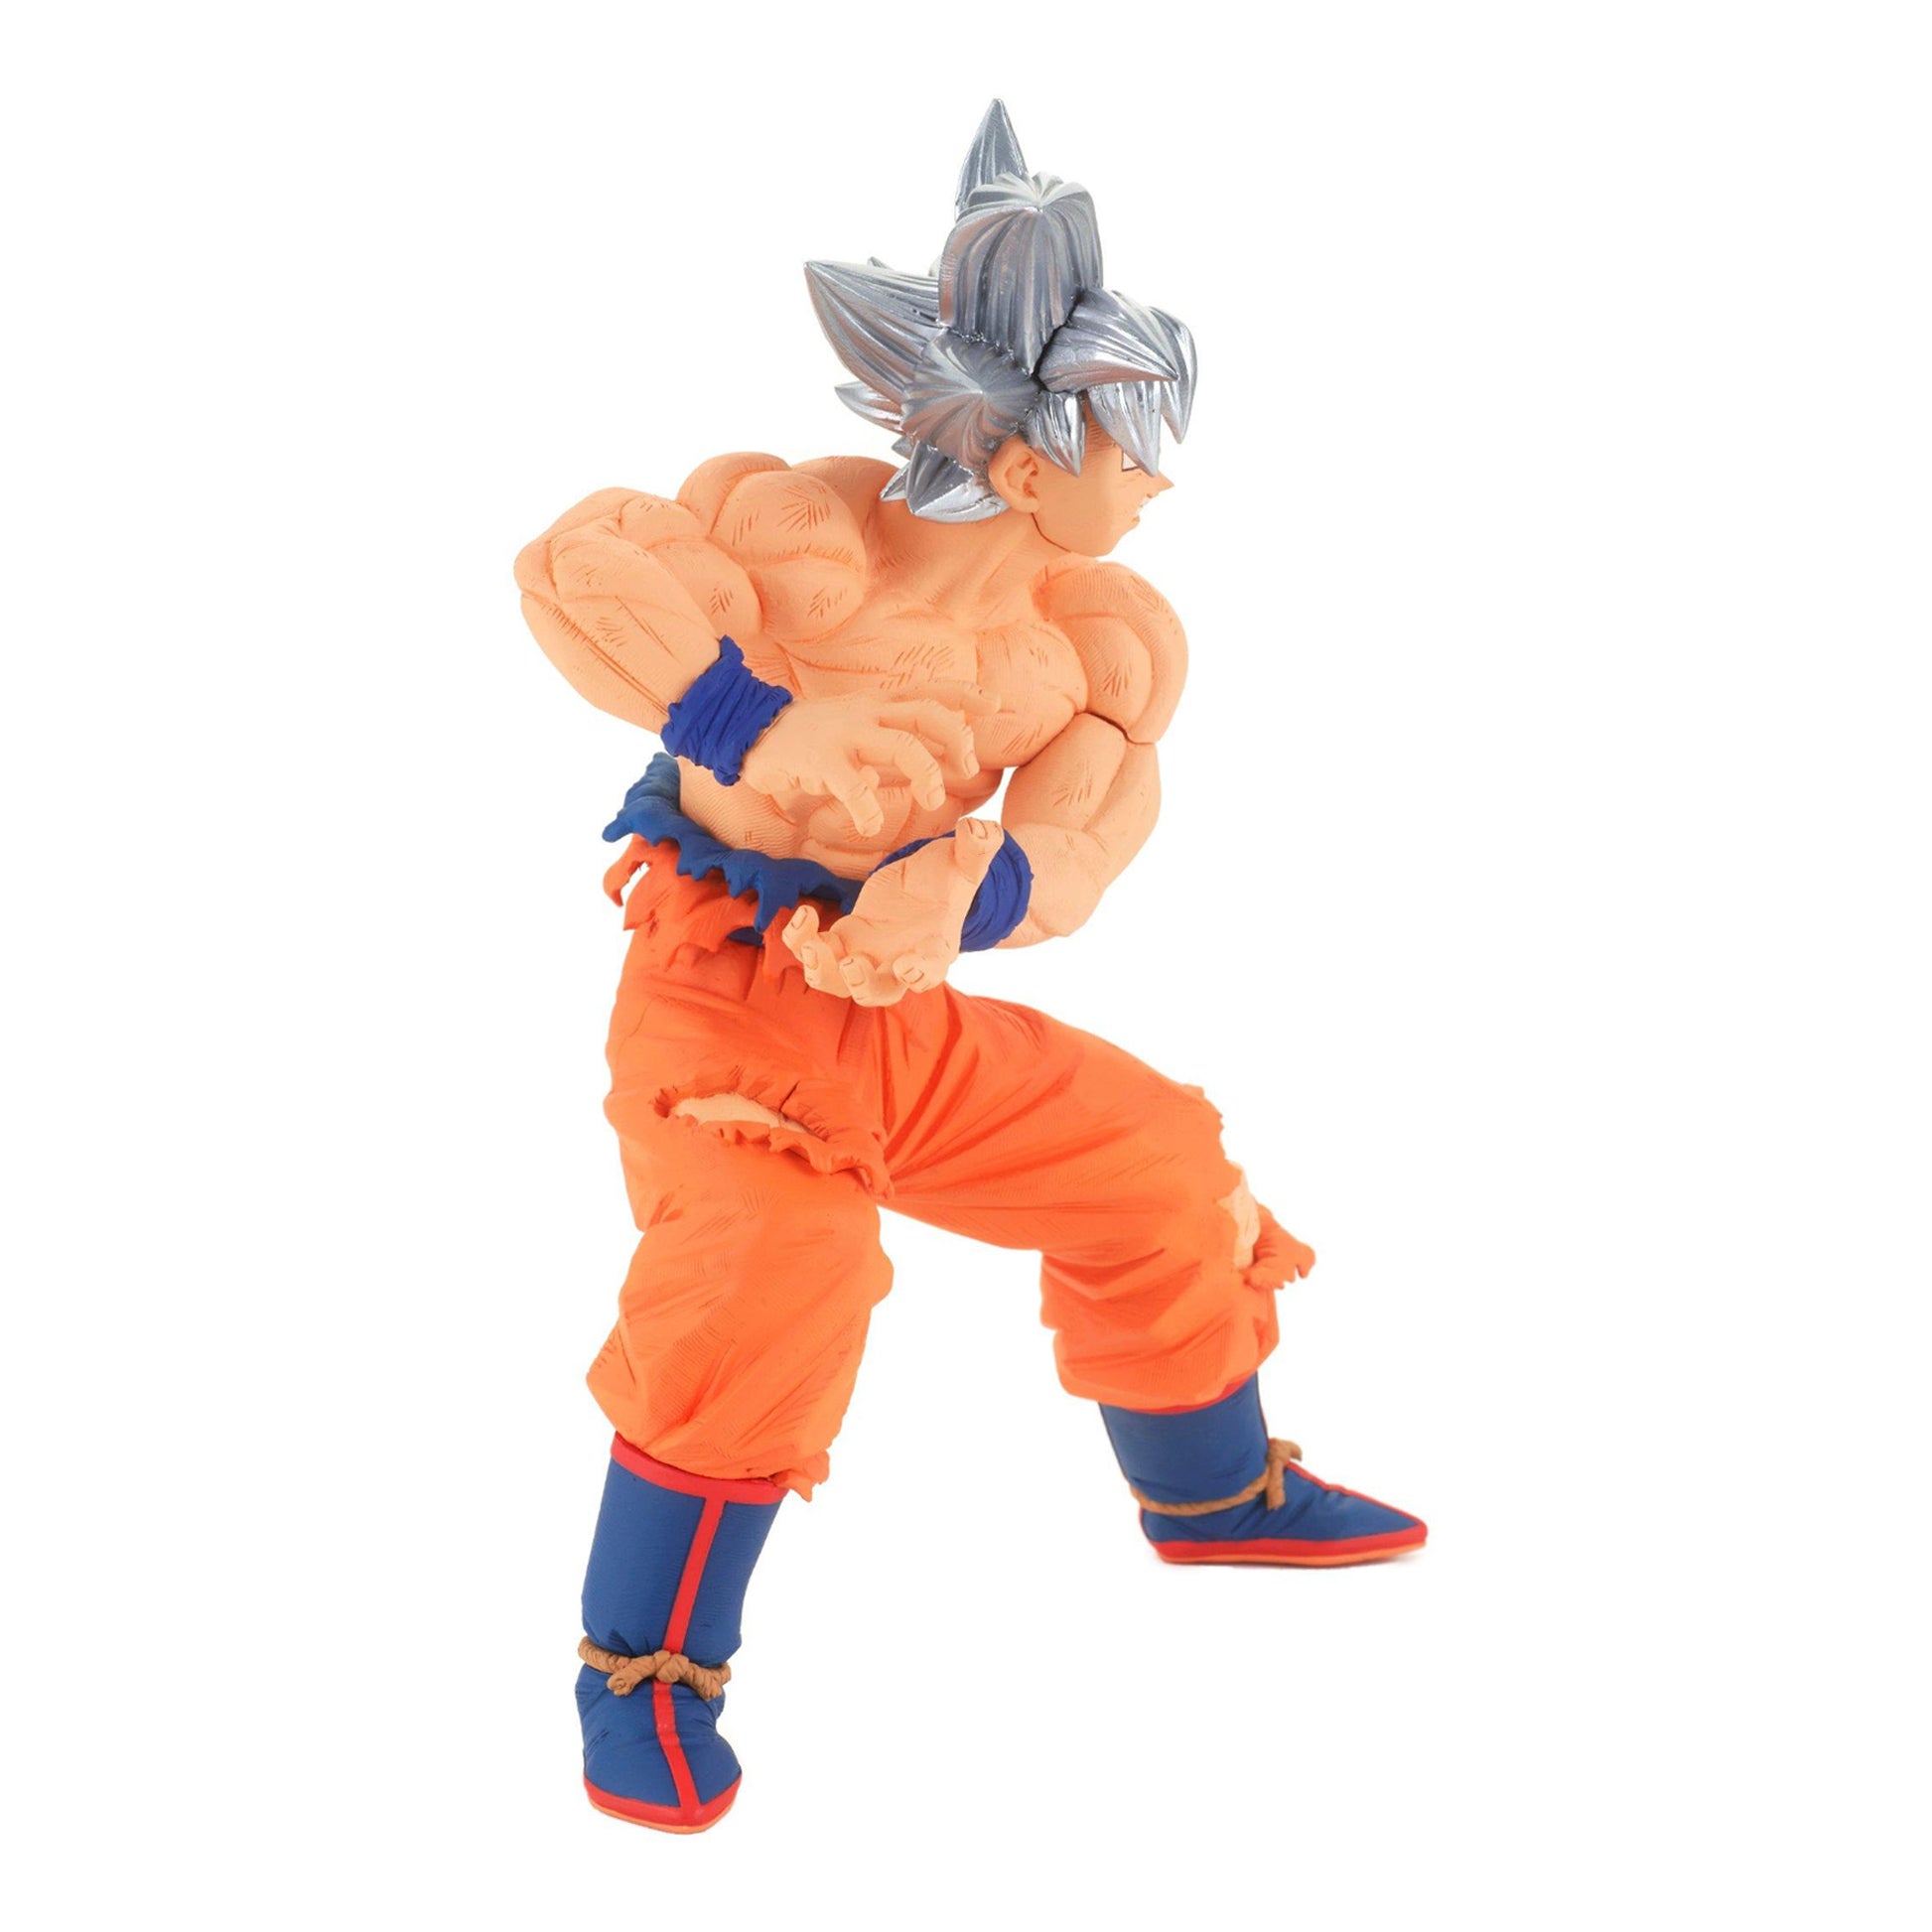 Dragon Ball Super Banpresto Figure